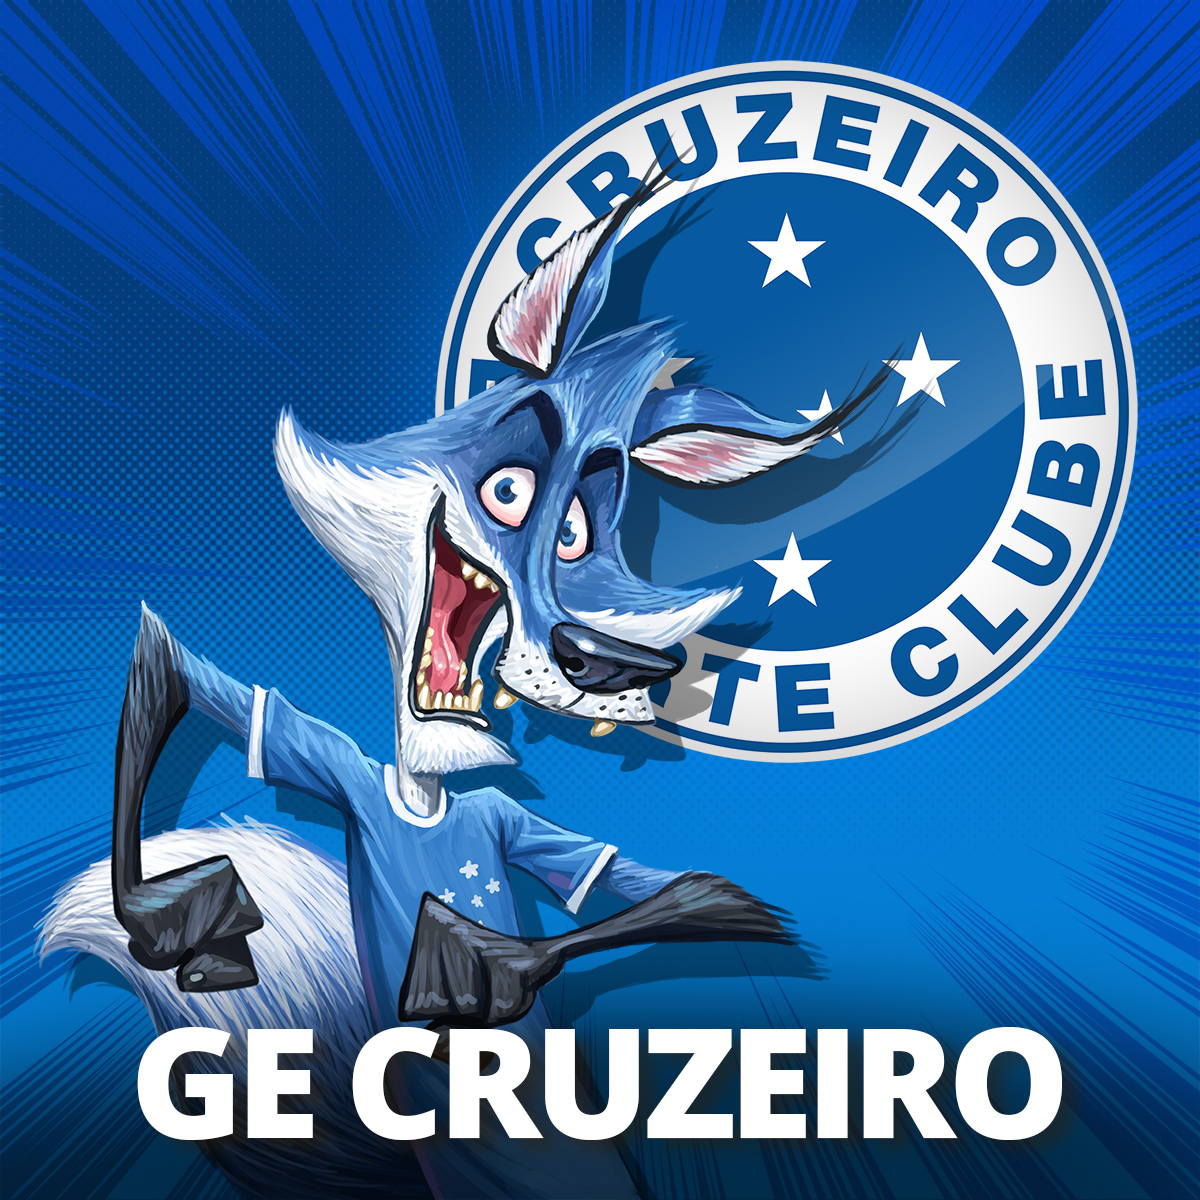 Globo Esporte - Notícias do Cruzeiro de hoje, 07/07 